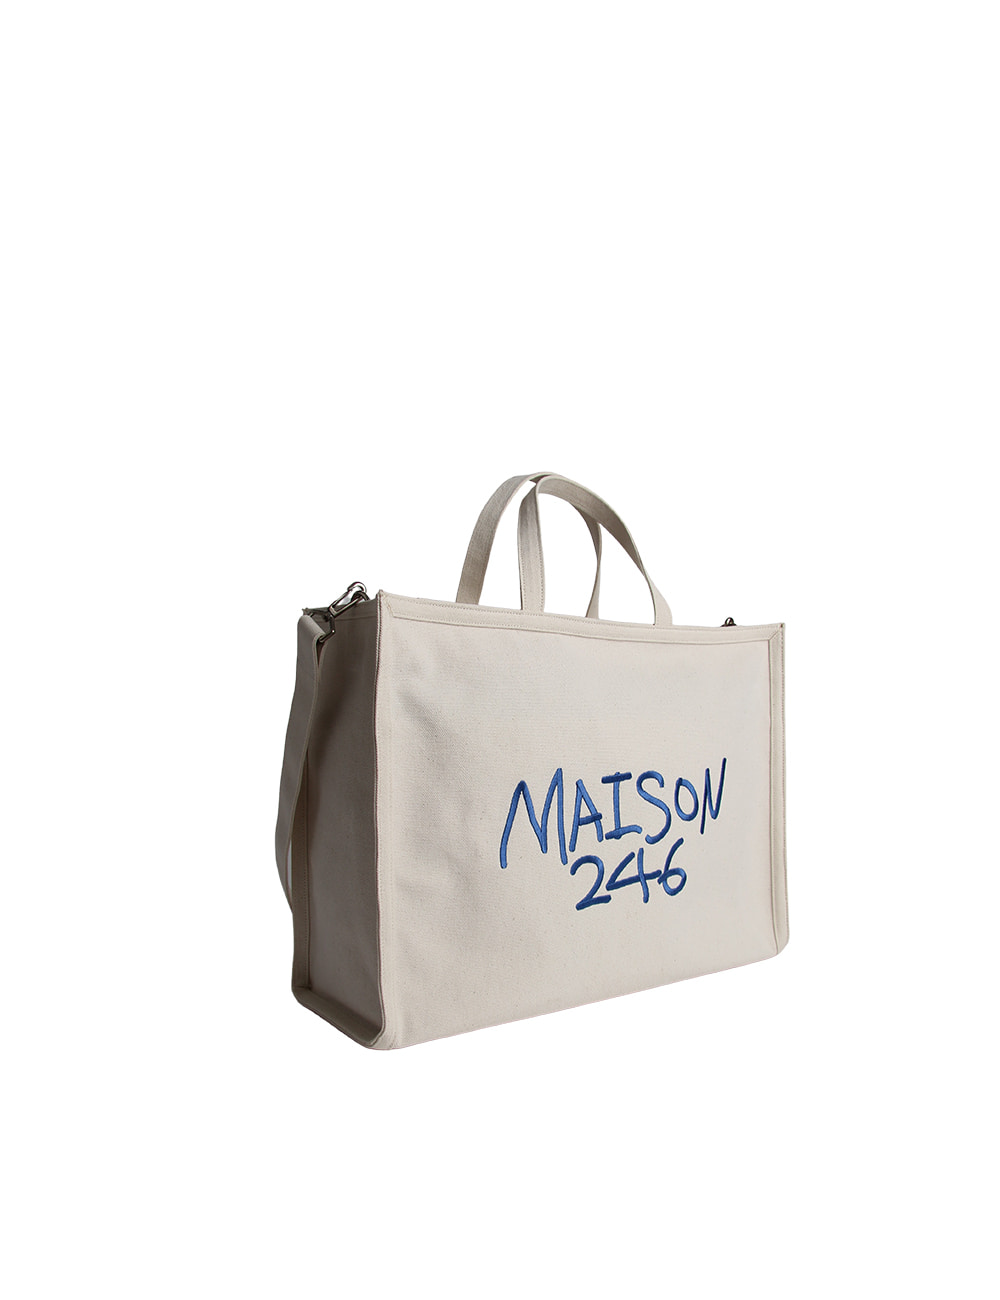 MAISON246,QUAD M SIGNATURE BAG,No.246